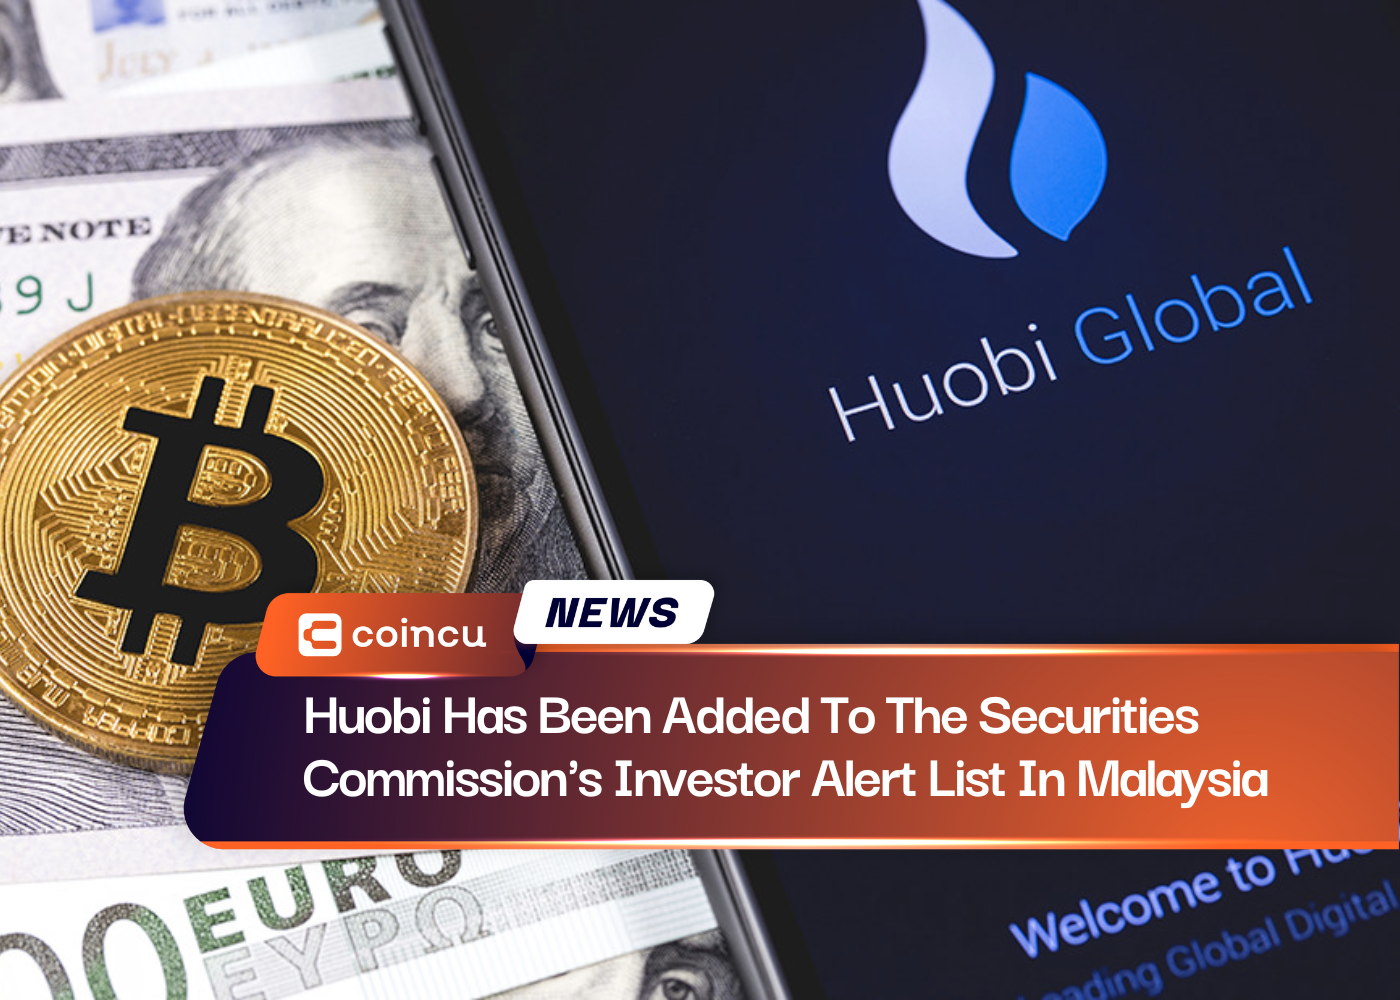 Huobiがマレーシアの証券委員会の投資家向け警告リストに追加されました